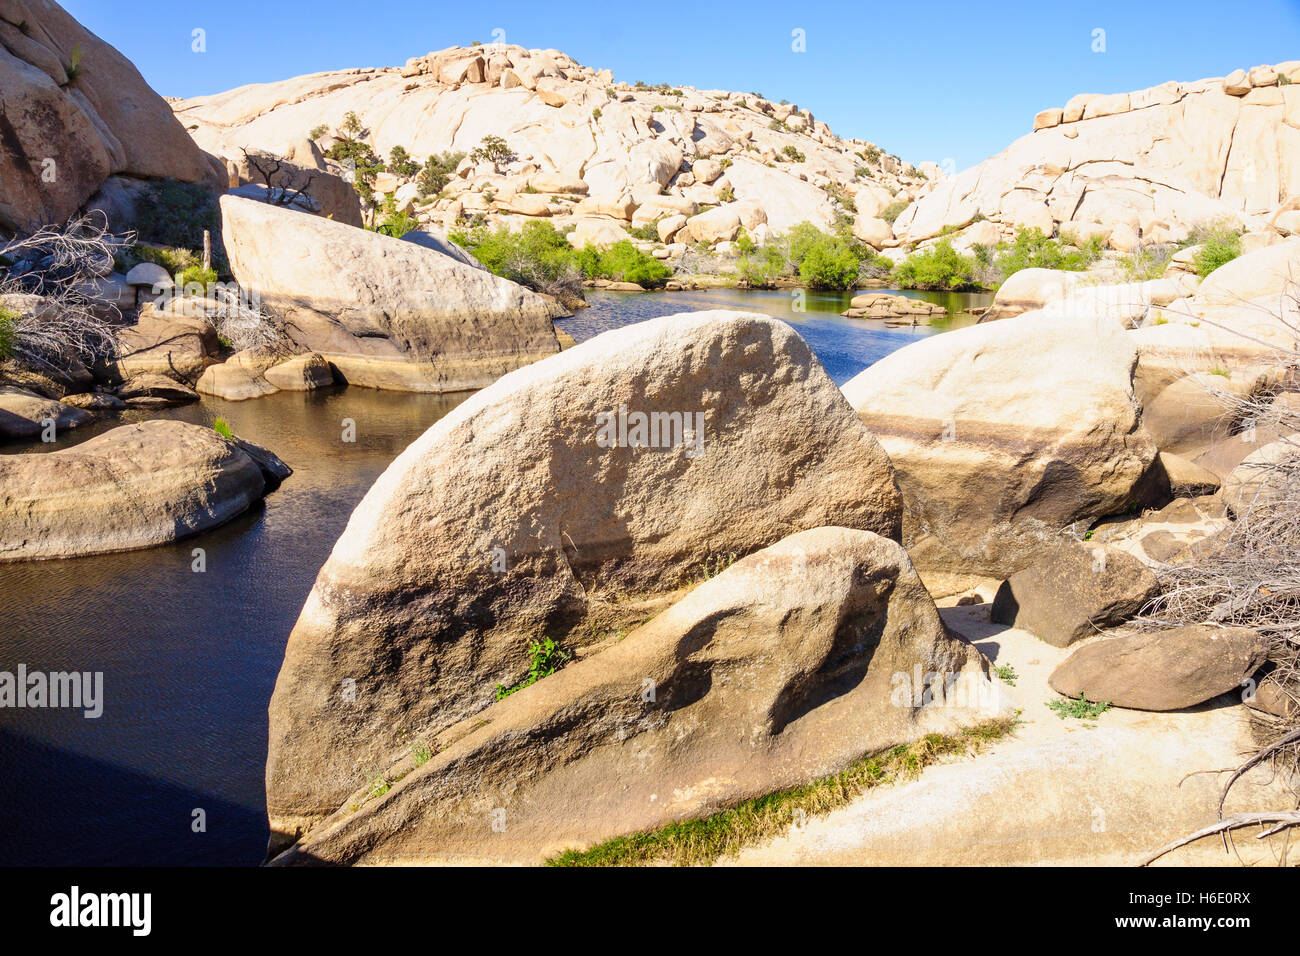 Stream and rocks in Joshua Tree National Park, California, USA Stock Photo